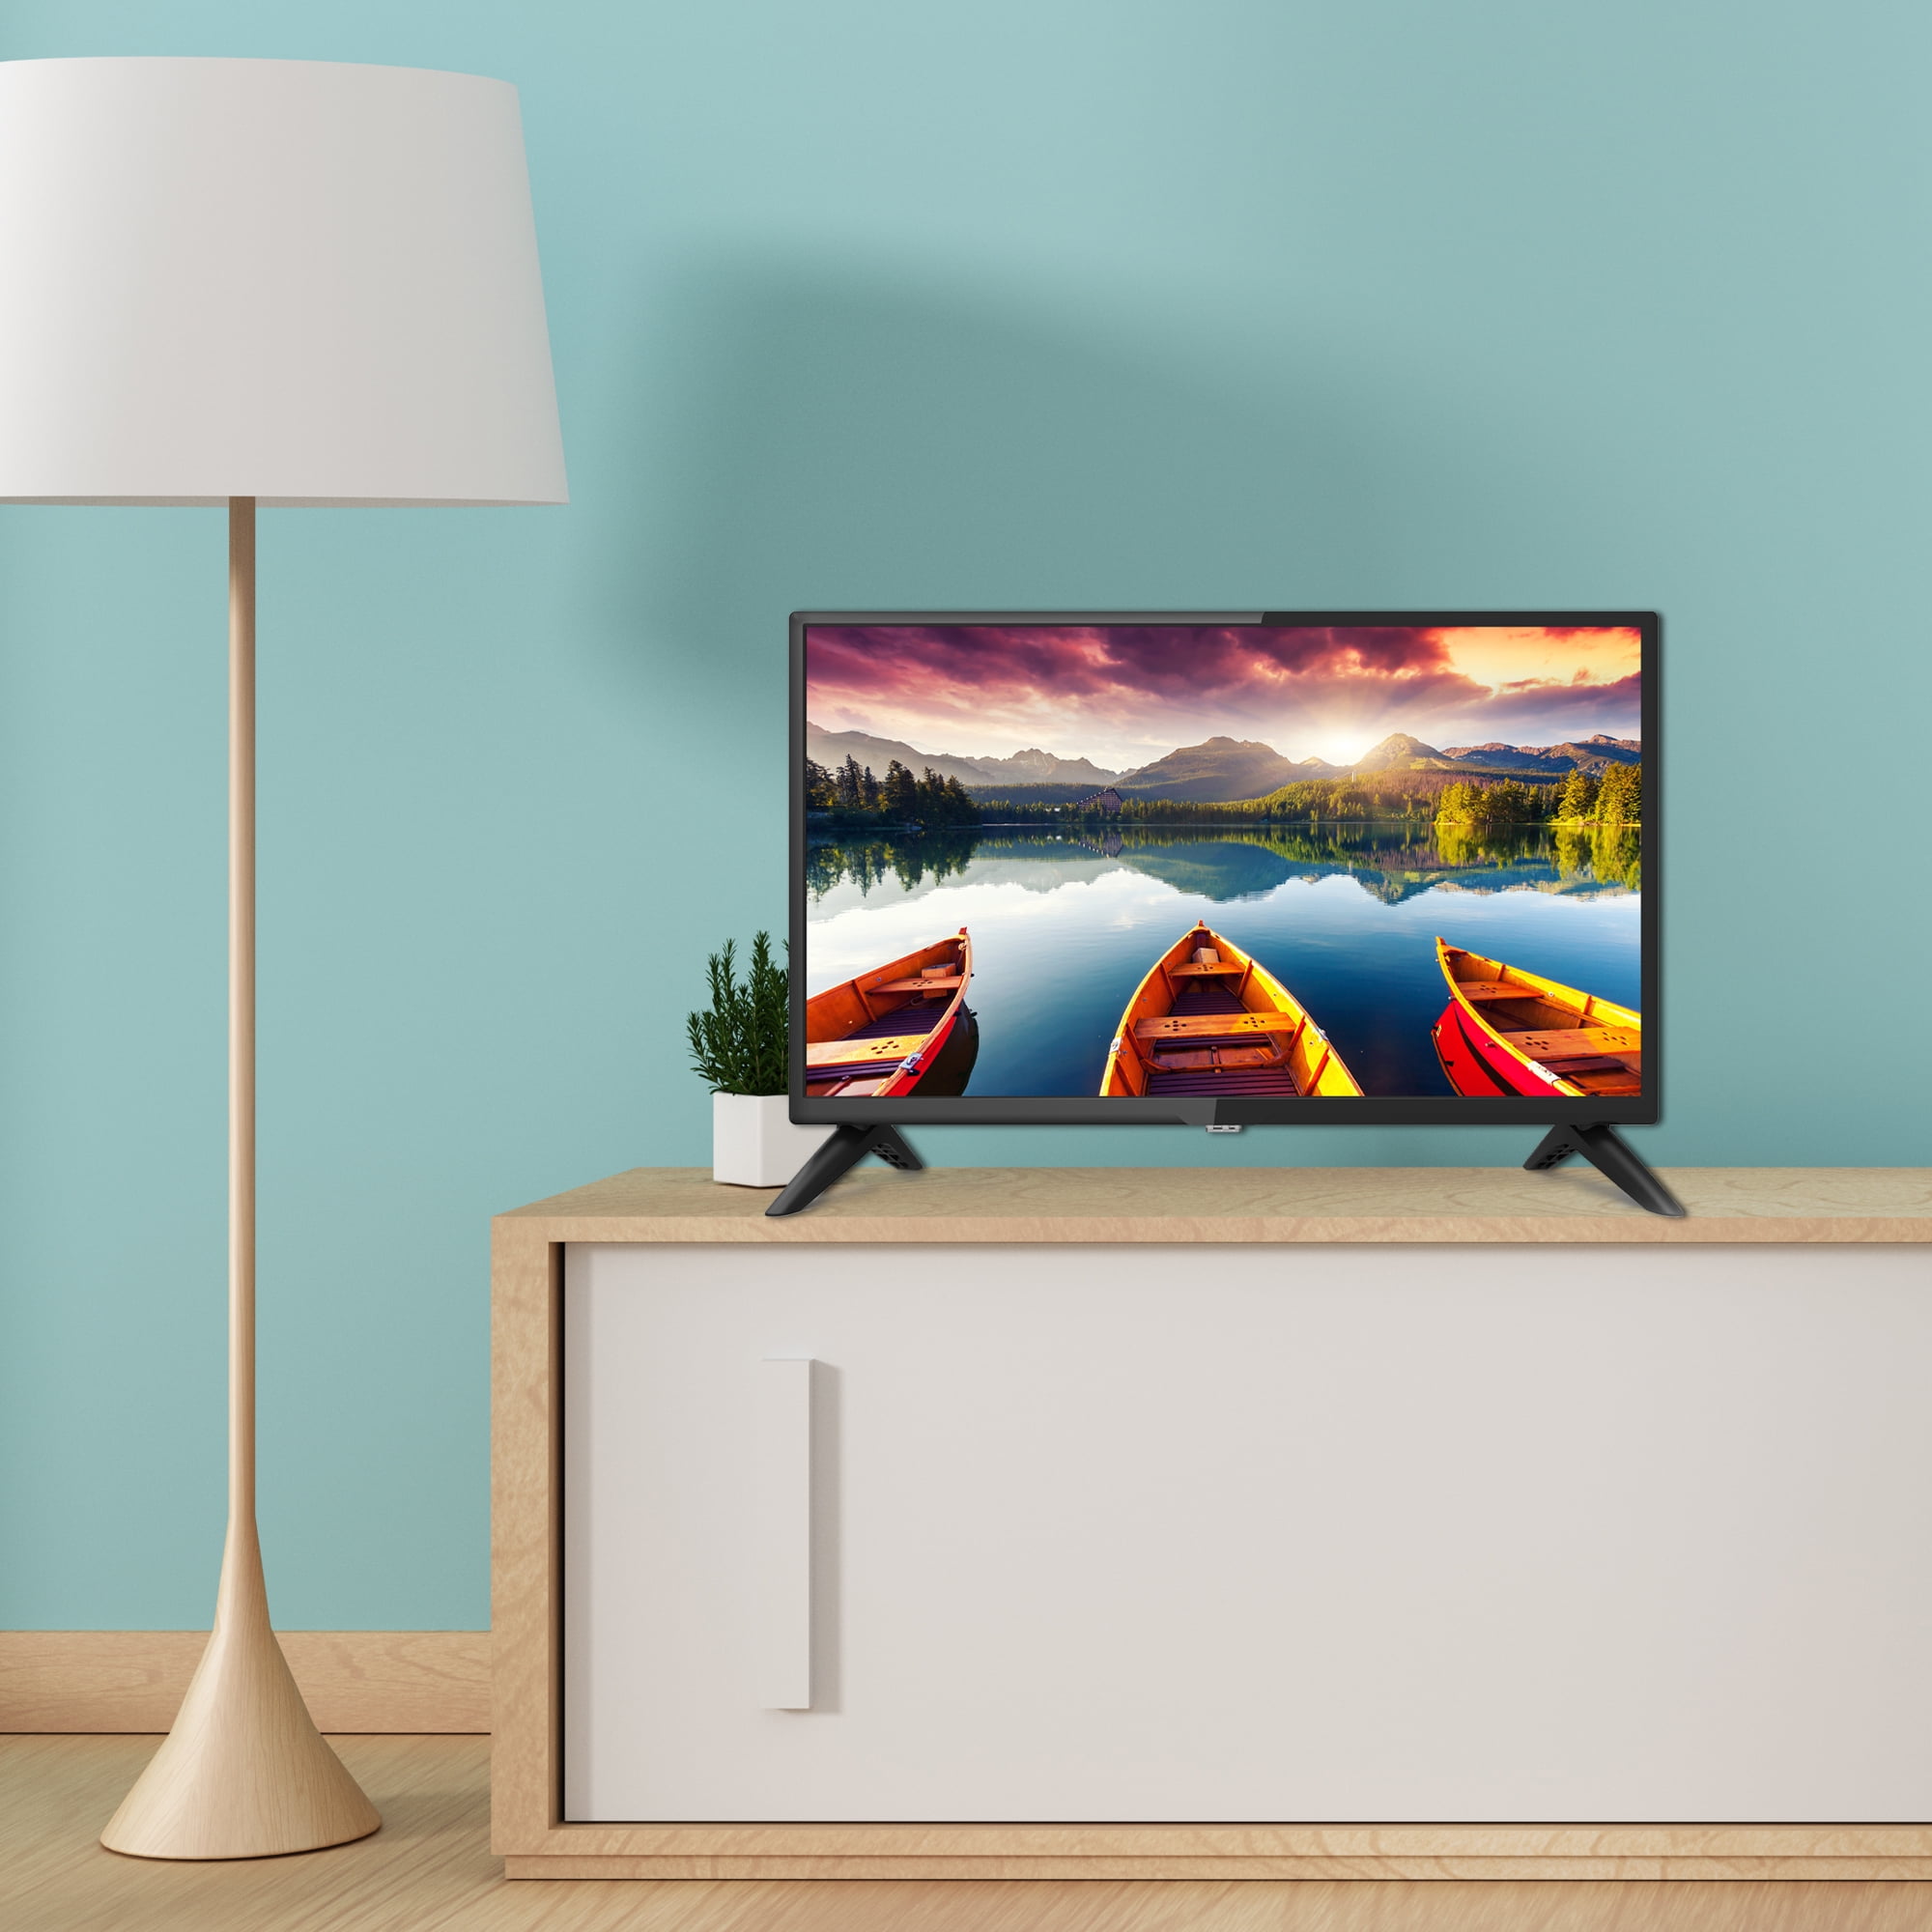 Impecca Monitor de TV LED HD de 24 pulgadas TL2400H Energy Star Slim Design  720p, altavoces integrados con múltiples entradas HDMI, puertos USB y